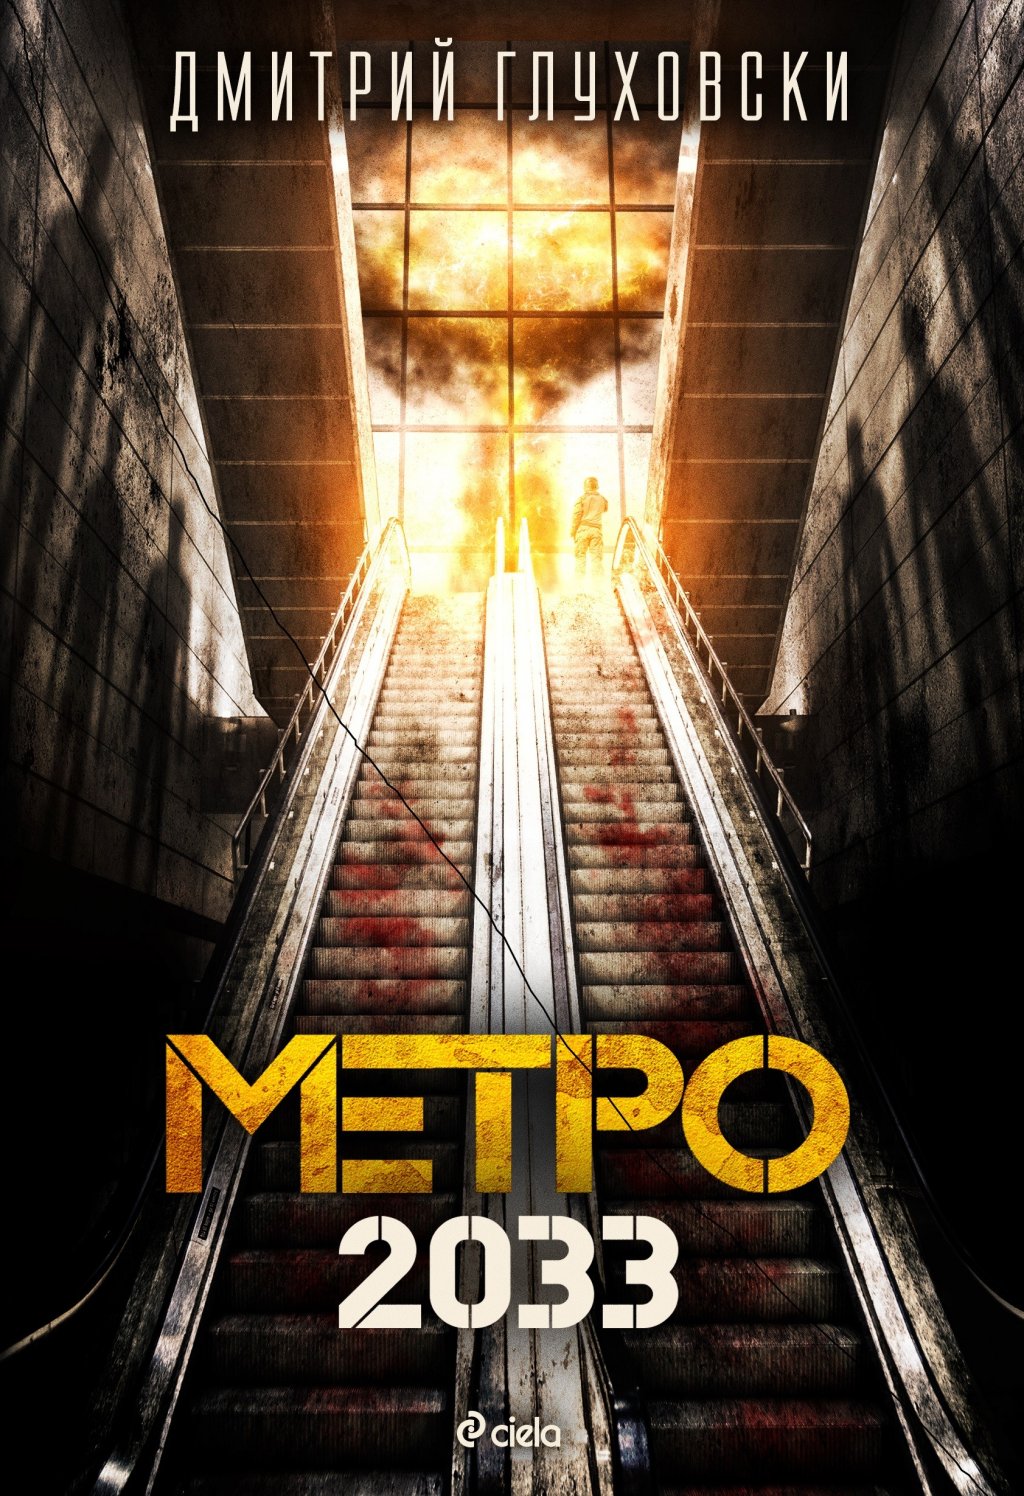 "Метро 2033" от Дмитрий Глуховски
Впечатляващият постапокалиптичен роман описва живота на хората в московското метро след като светът над земята е бил разрушен от ядрена война. Глуховски започва да пише романа, когато е само на 18 години. Първо го публикува в сайта си за безплатно четене. Резултатът - над 3 милиона читатели. Зад фантастичния сюжет на книгата стои модел на съвременното руско общество, има критичен поглед към комунизма в бившия СССР и надигането на фашизма в съвременна Русия. А историята отвори пътя на Глуховски и към други истории, както и още две книги от поредицата.